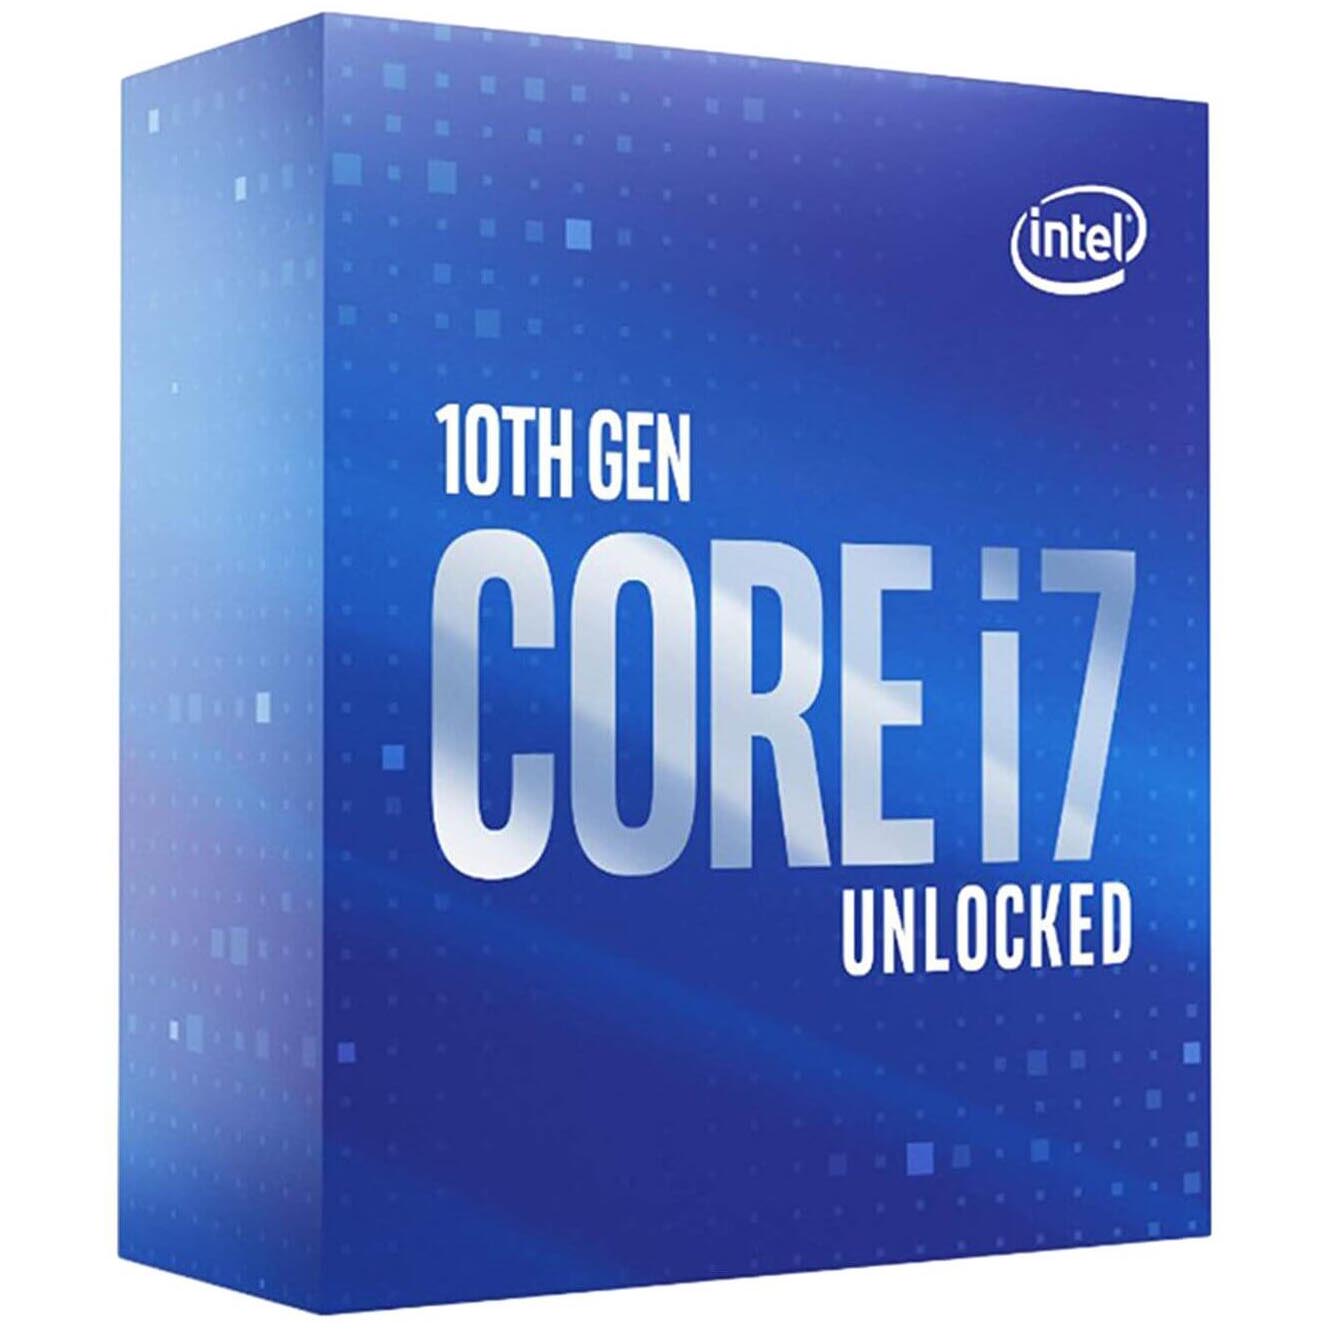 Процессор Intel Core i7-10700KF BOX (без кулера), LGA 1200 процессор intel core i7 10700 box без кулера